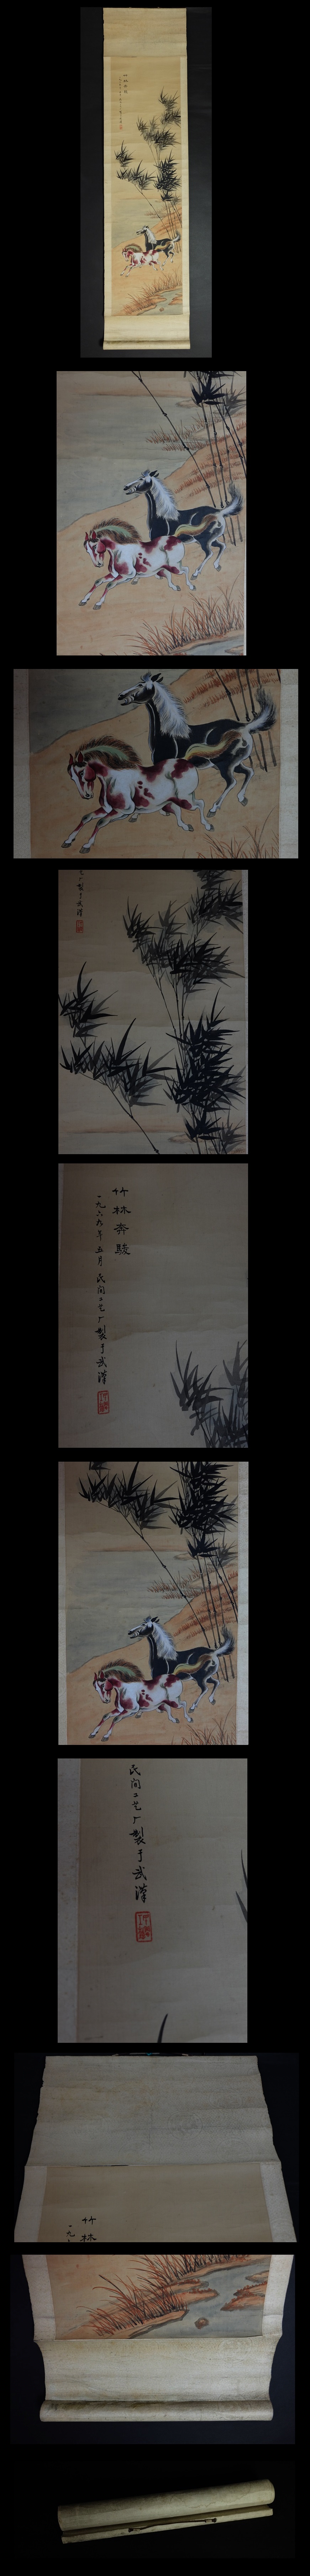 国内最安値日本・掛軸 竹林奔駿 書画 絹本 r28 掛軸